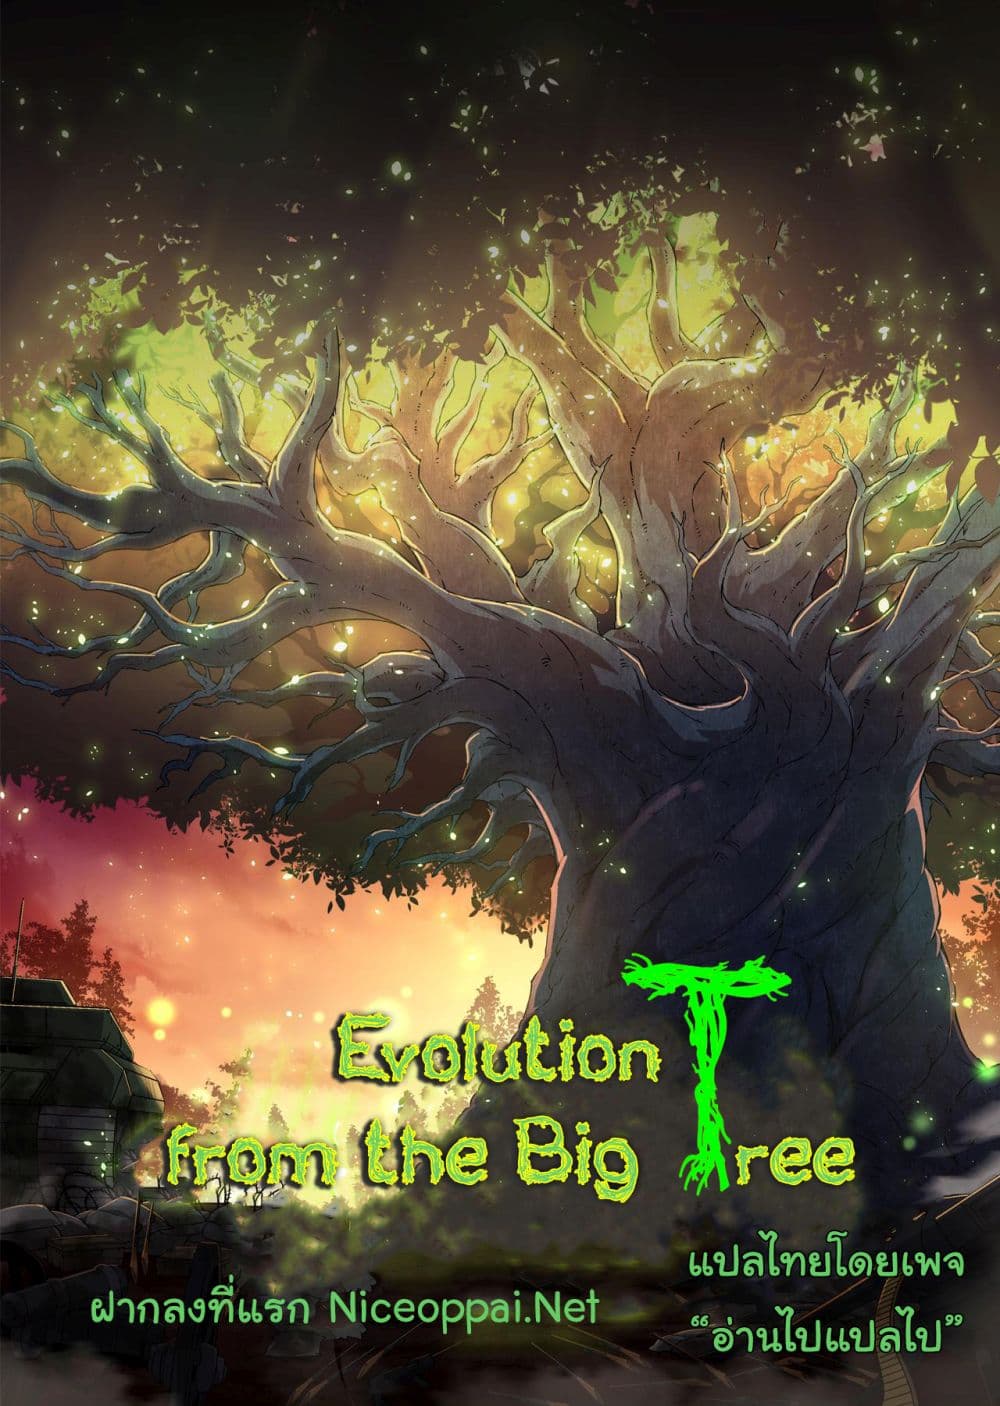 Evolution from the Big Tree Ã Â¸â€¢Ã Â¸Â­Ã Â¸â„¢Ã Â¸â€”Ã Â¸ÂµÃ Â¹Ë† 31 (57)